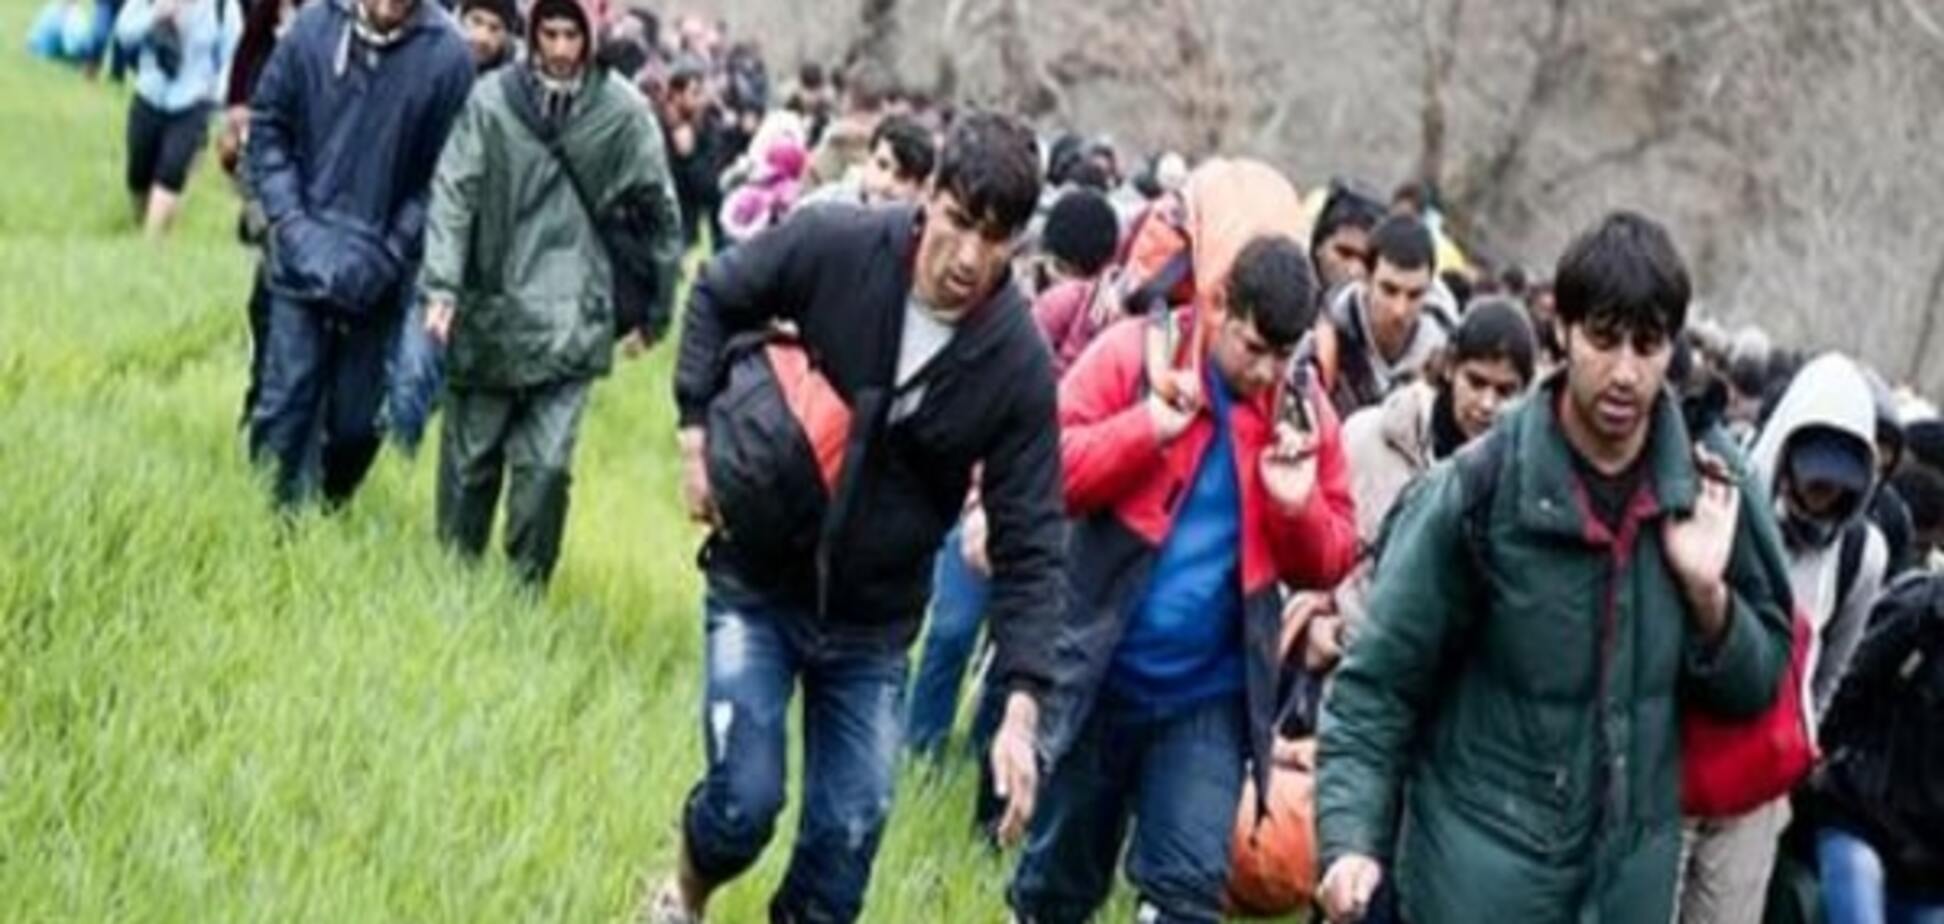 Нашествие беженцев в Евросоюз: СМИ назвали 5 сценариев развития событий